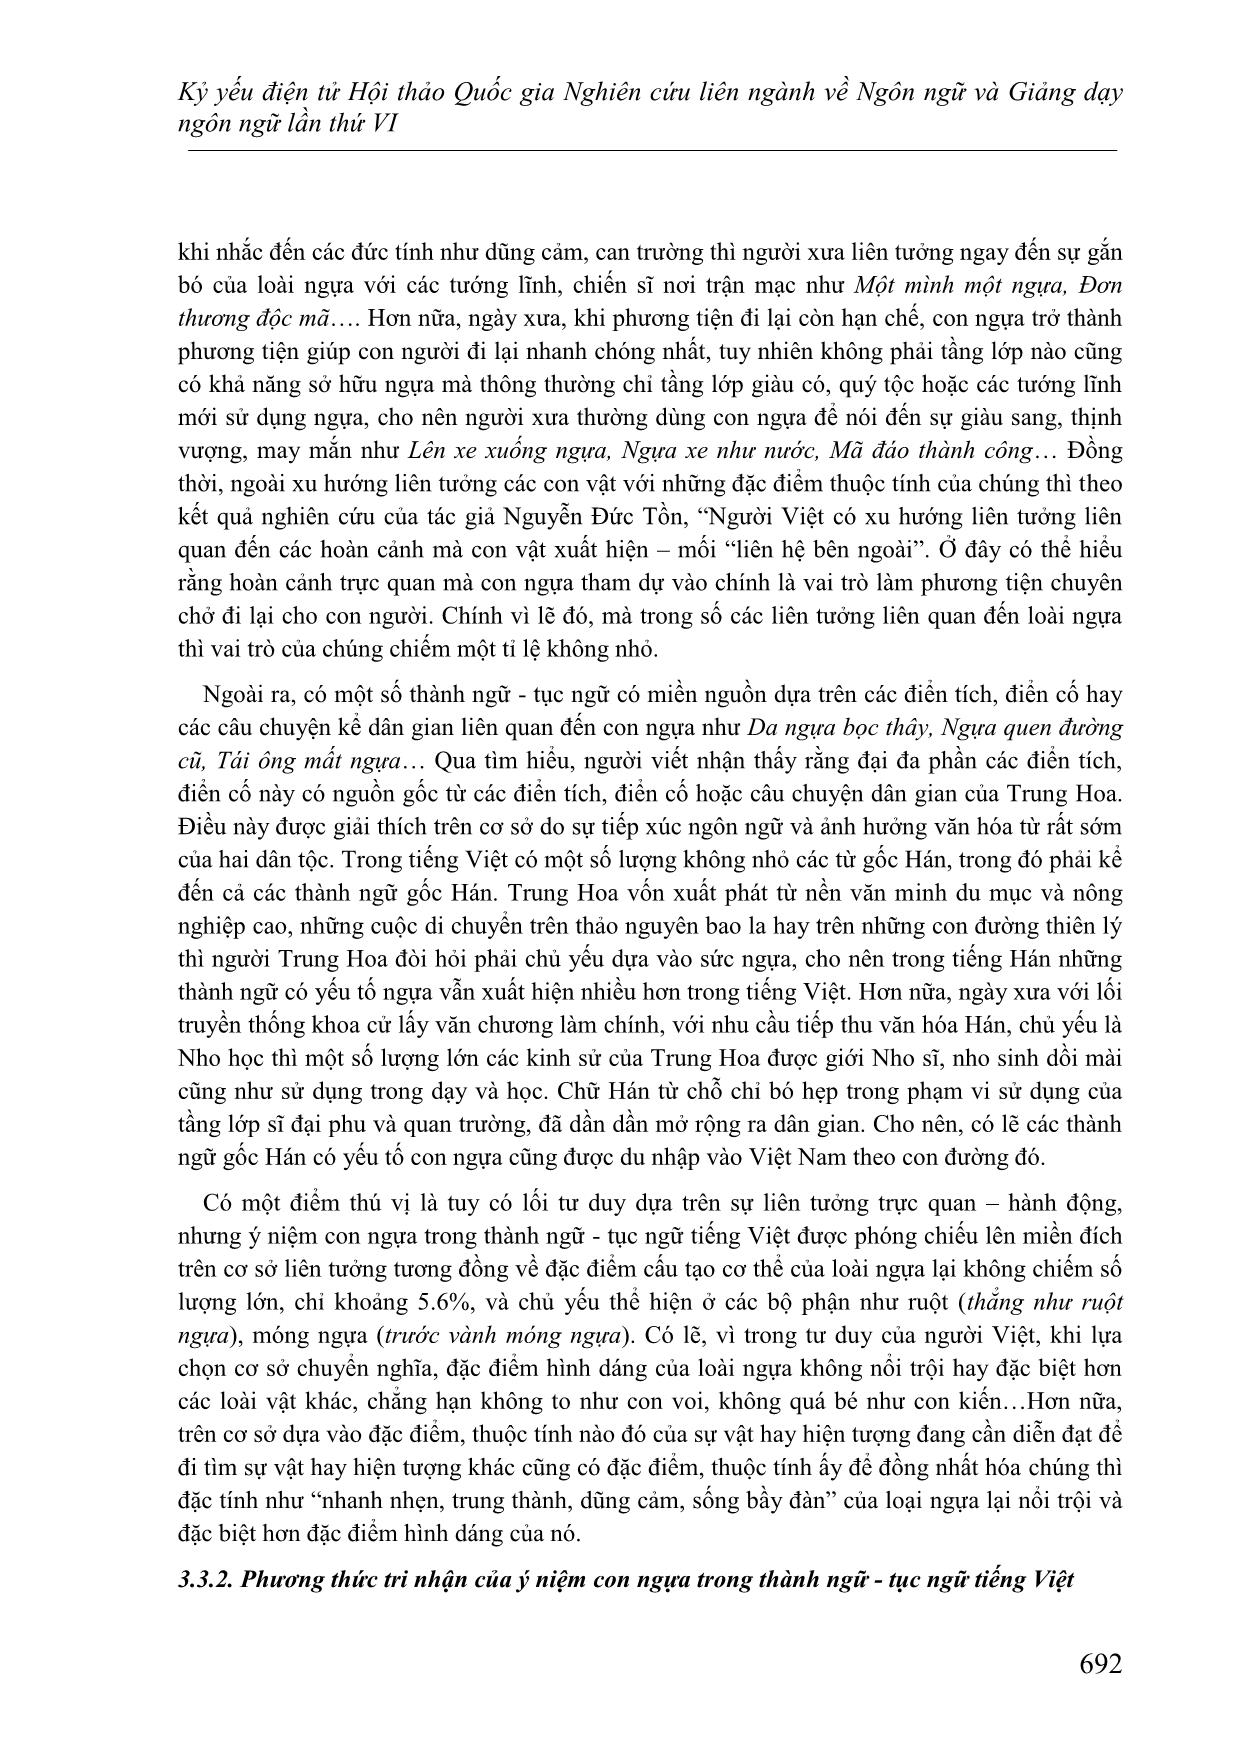 Một cách kiến giải về hình ảnh con ngựa trong thành ngữ-Tục ngữ Tiếng Việt dưới góc nhìn ngôn ngữ học tri nhận trang 6